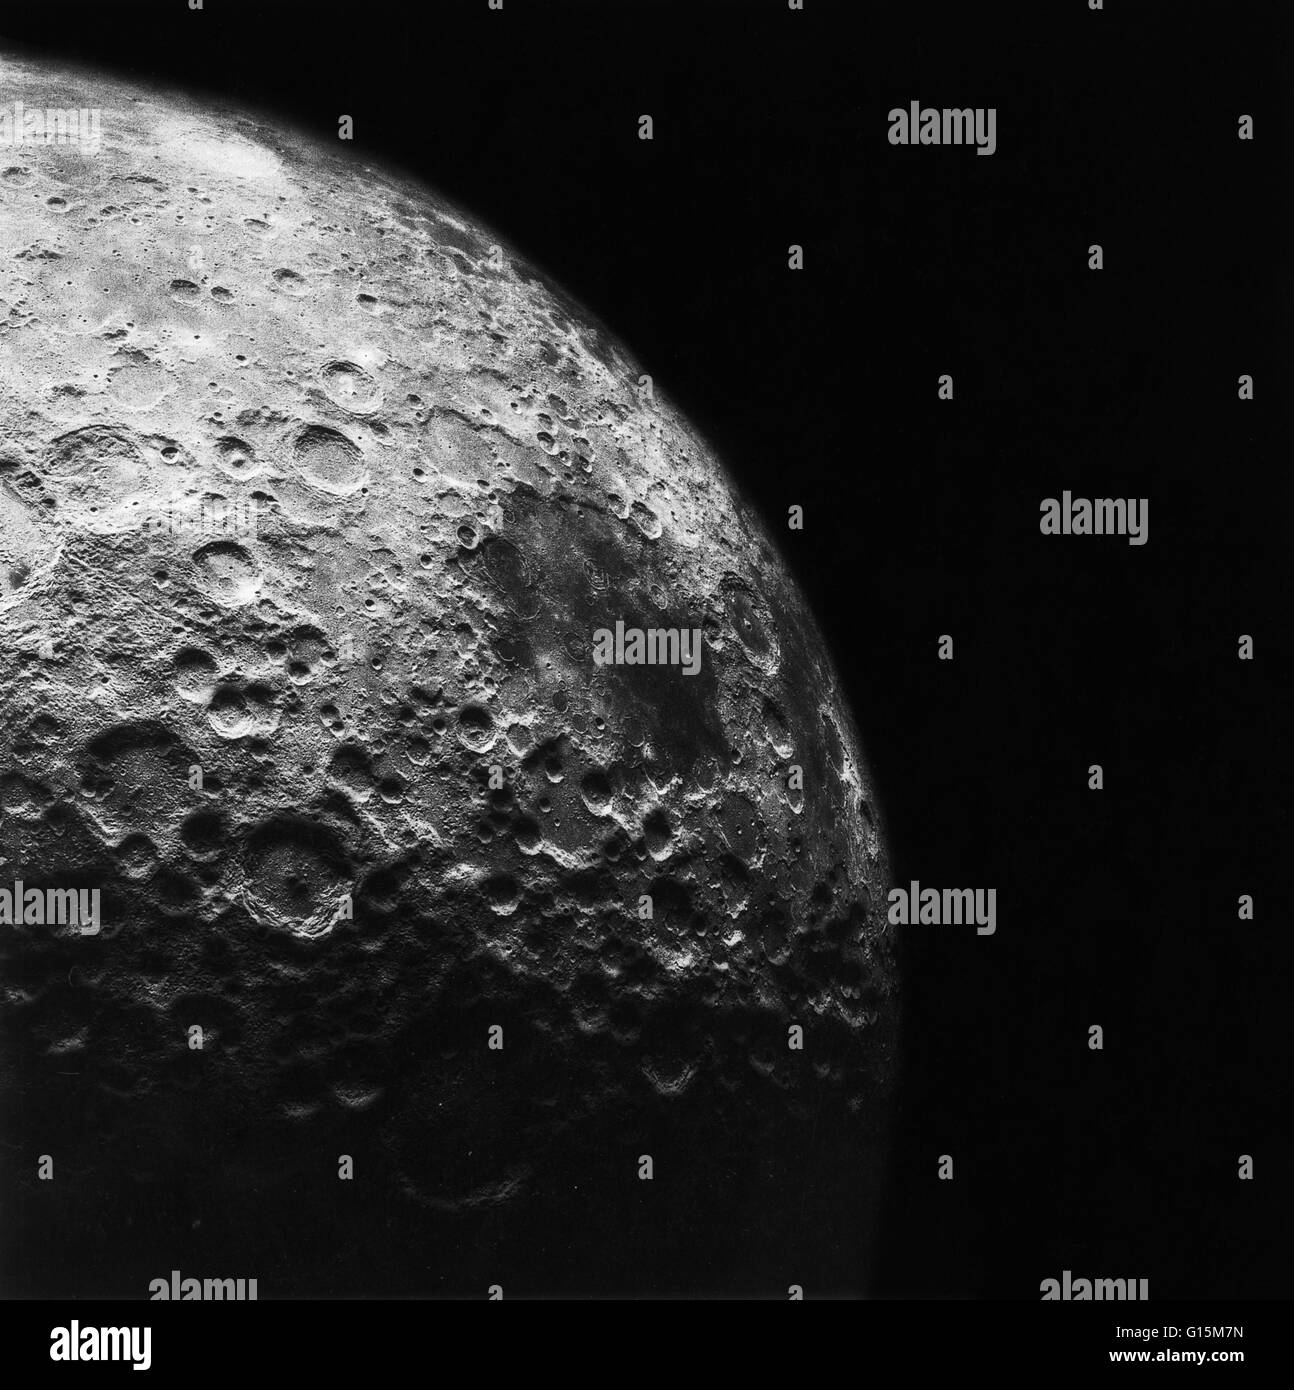 La luna di emisfero sud come fotografato da Apollo 15 gli astronauti in 1971, comprendente una porzione di lunar farside non visibile da terra. Mare Smythii è a destra, Humboldt cratere si trova presso la centrale di sinistra e crateri Hirayama, Sklodowska, un Foto Stock